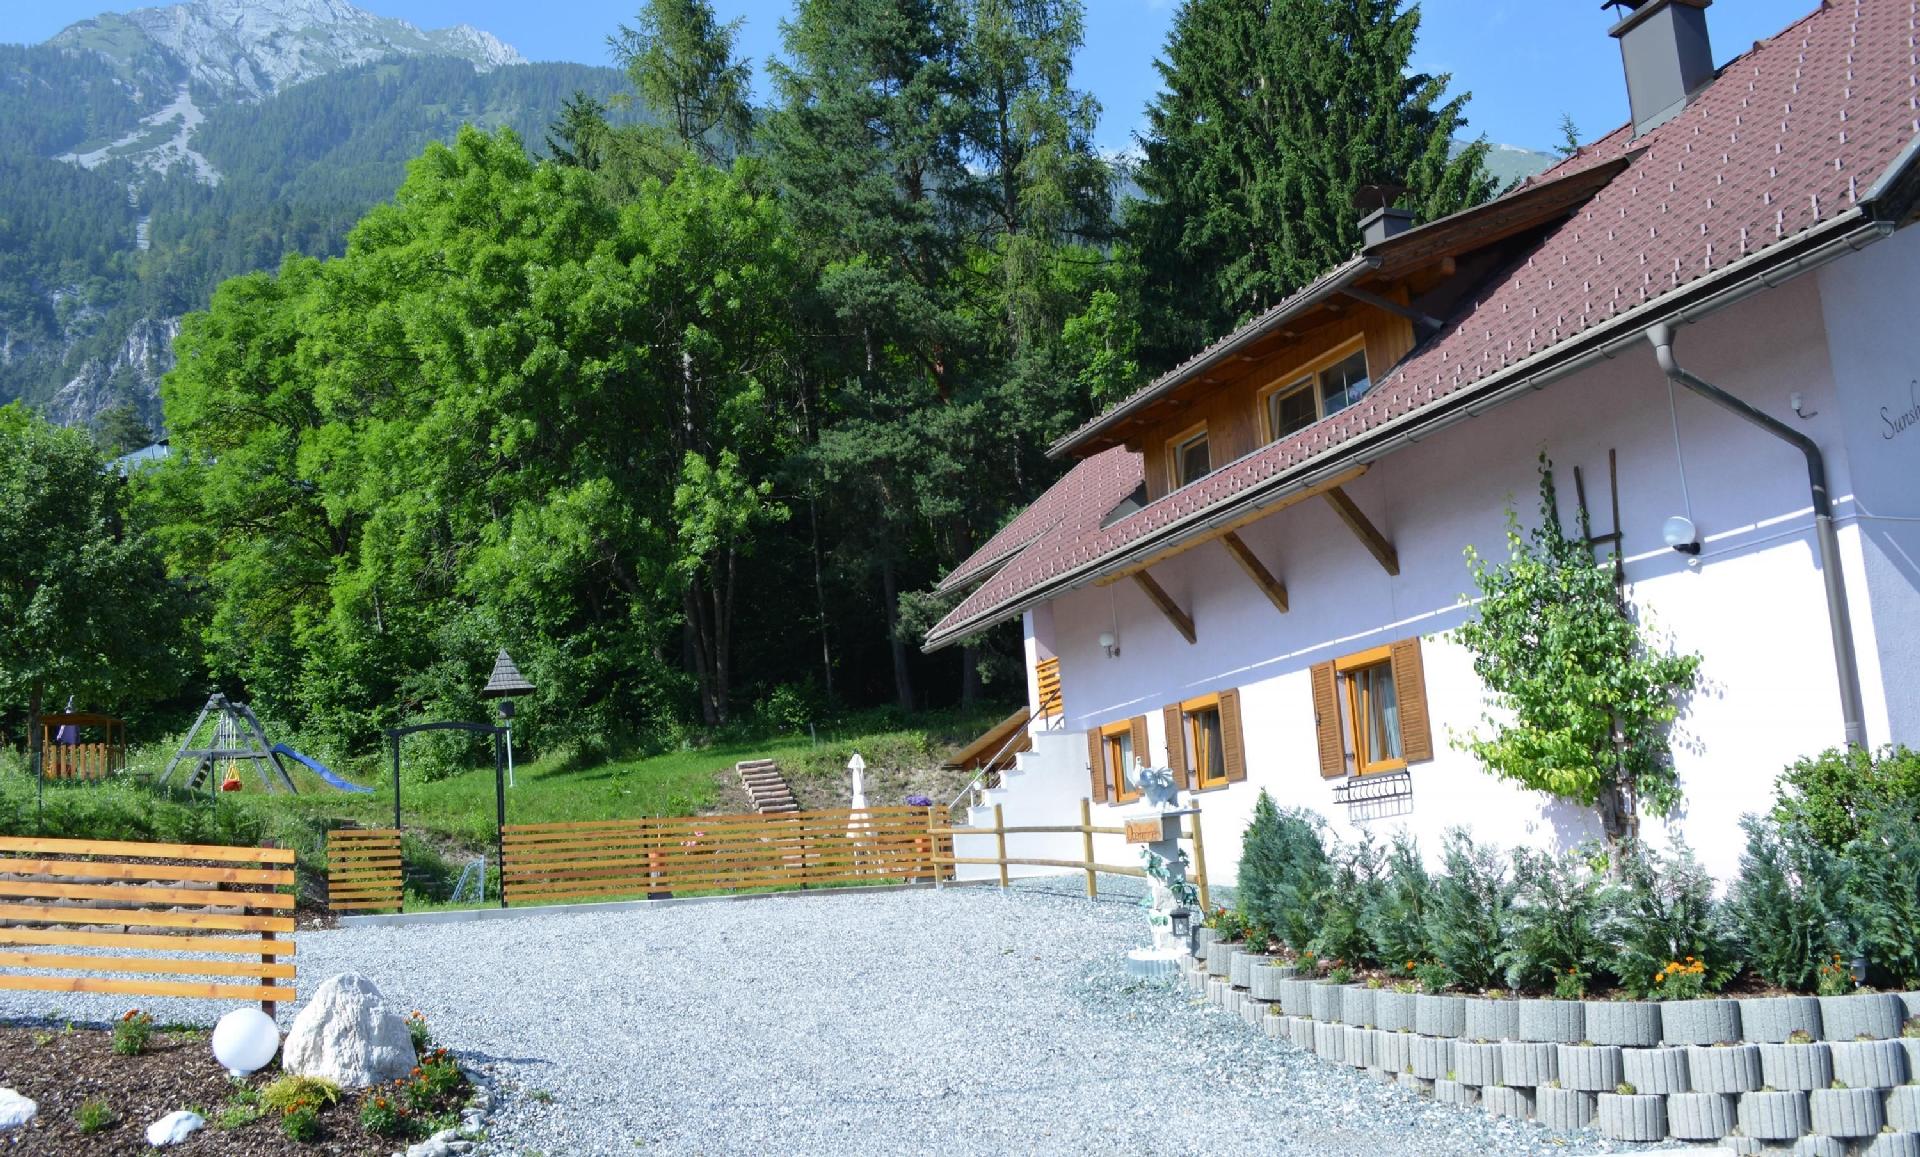 Ferienwohnung in Hermagor Pressegger See mit eigen Ferienhaus in Österreich